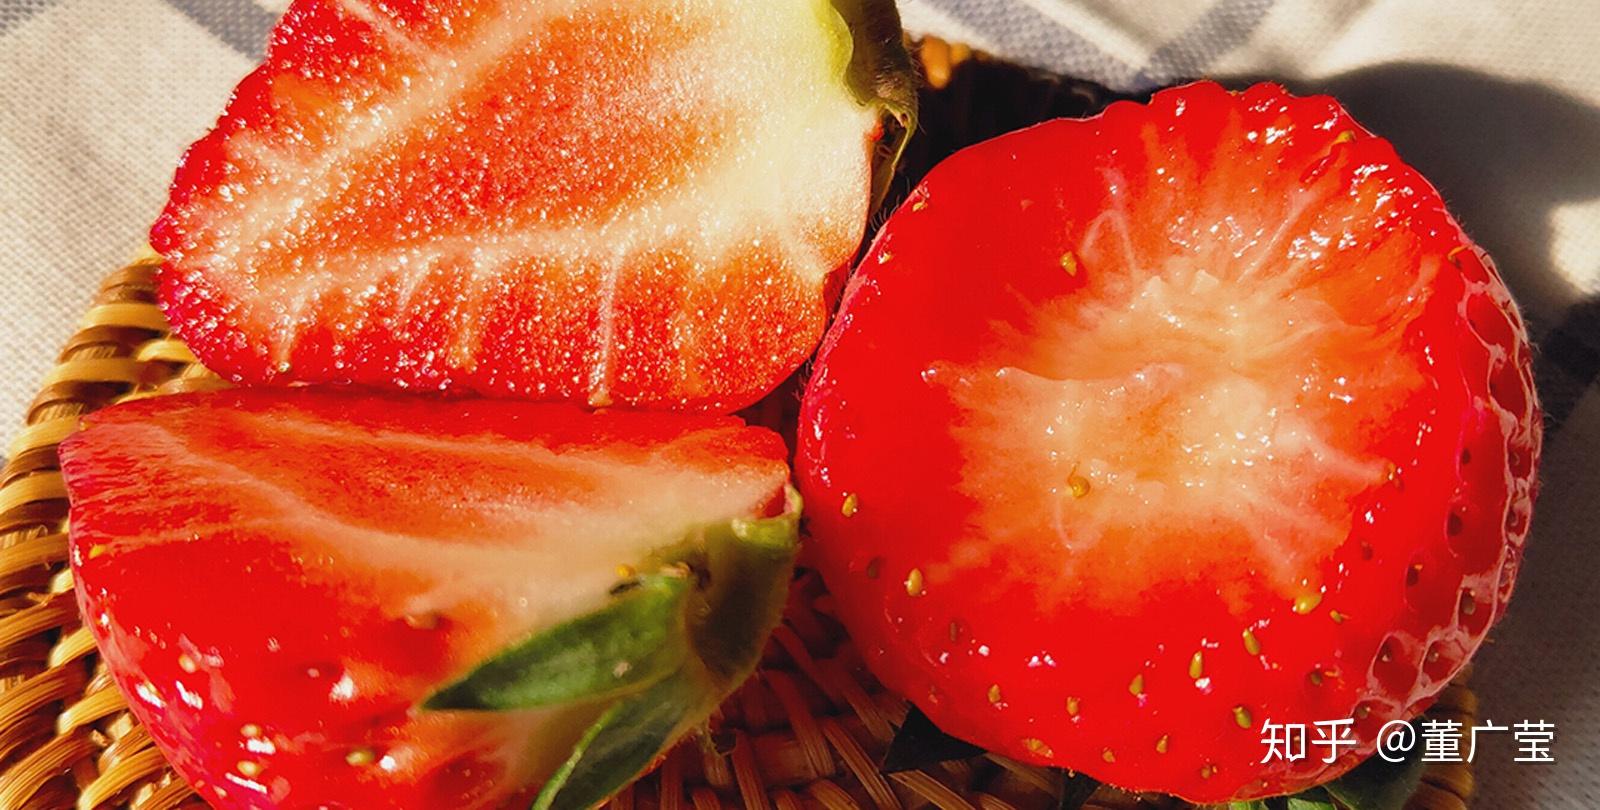 吃草莓的季节 - 哔哩哔哩